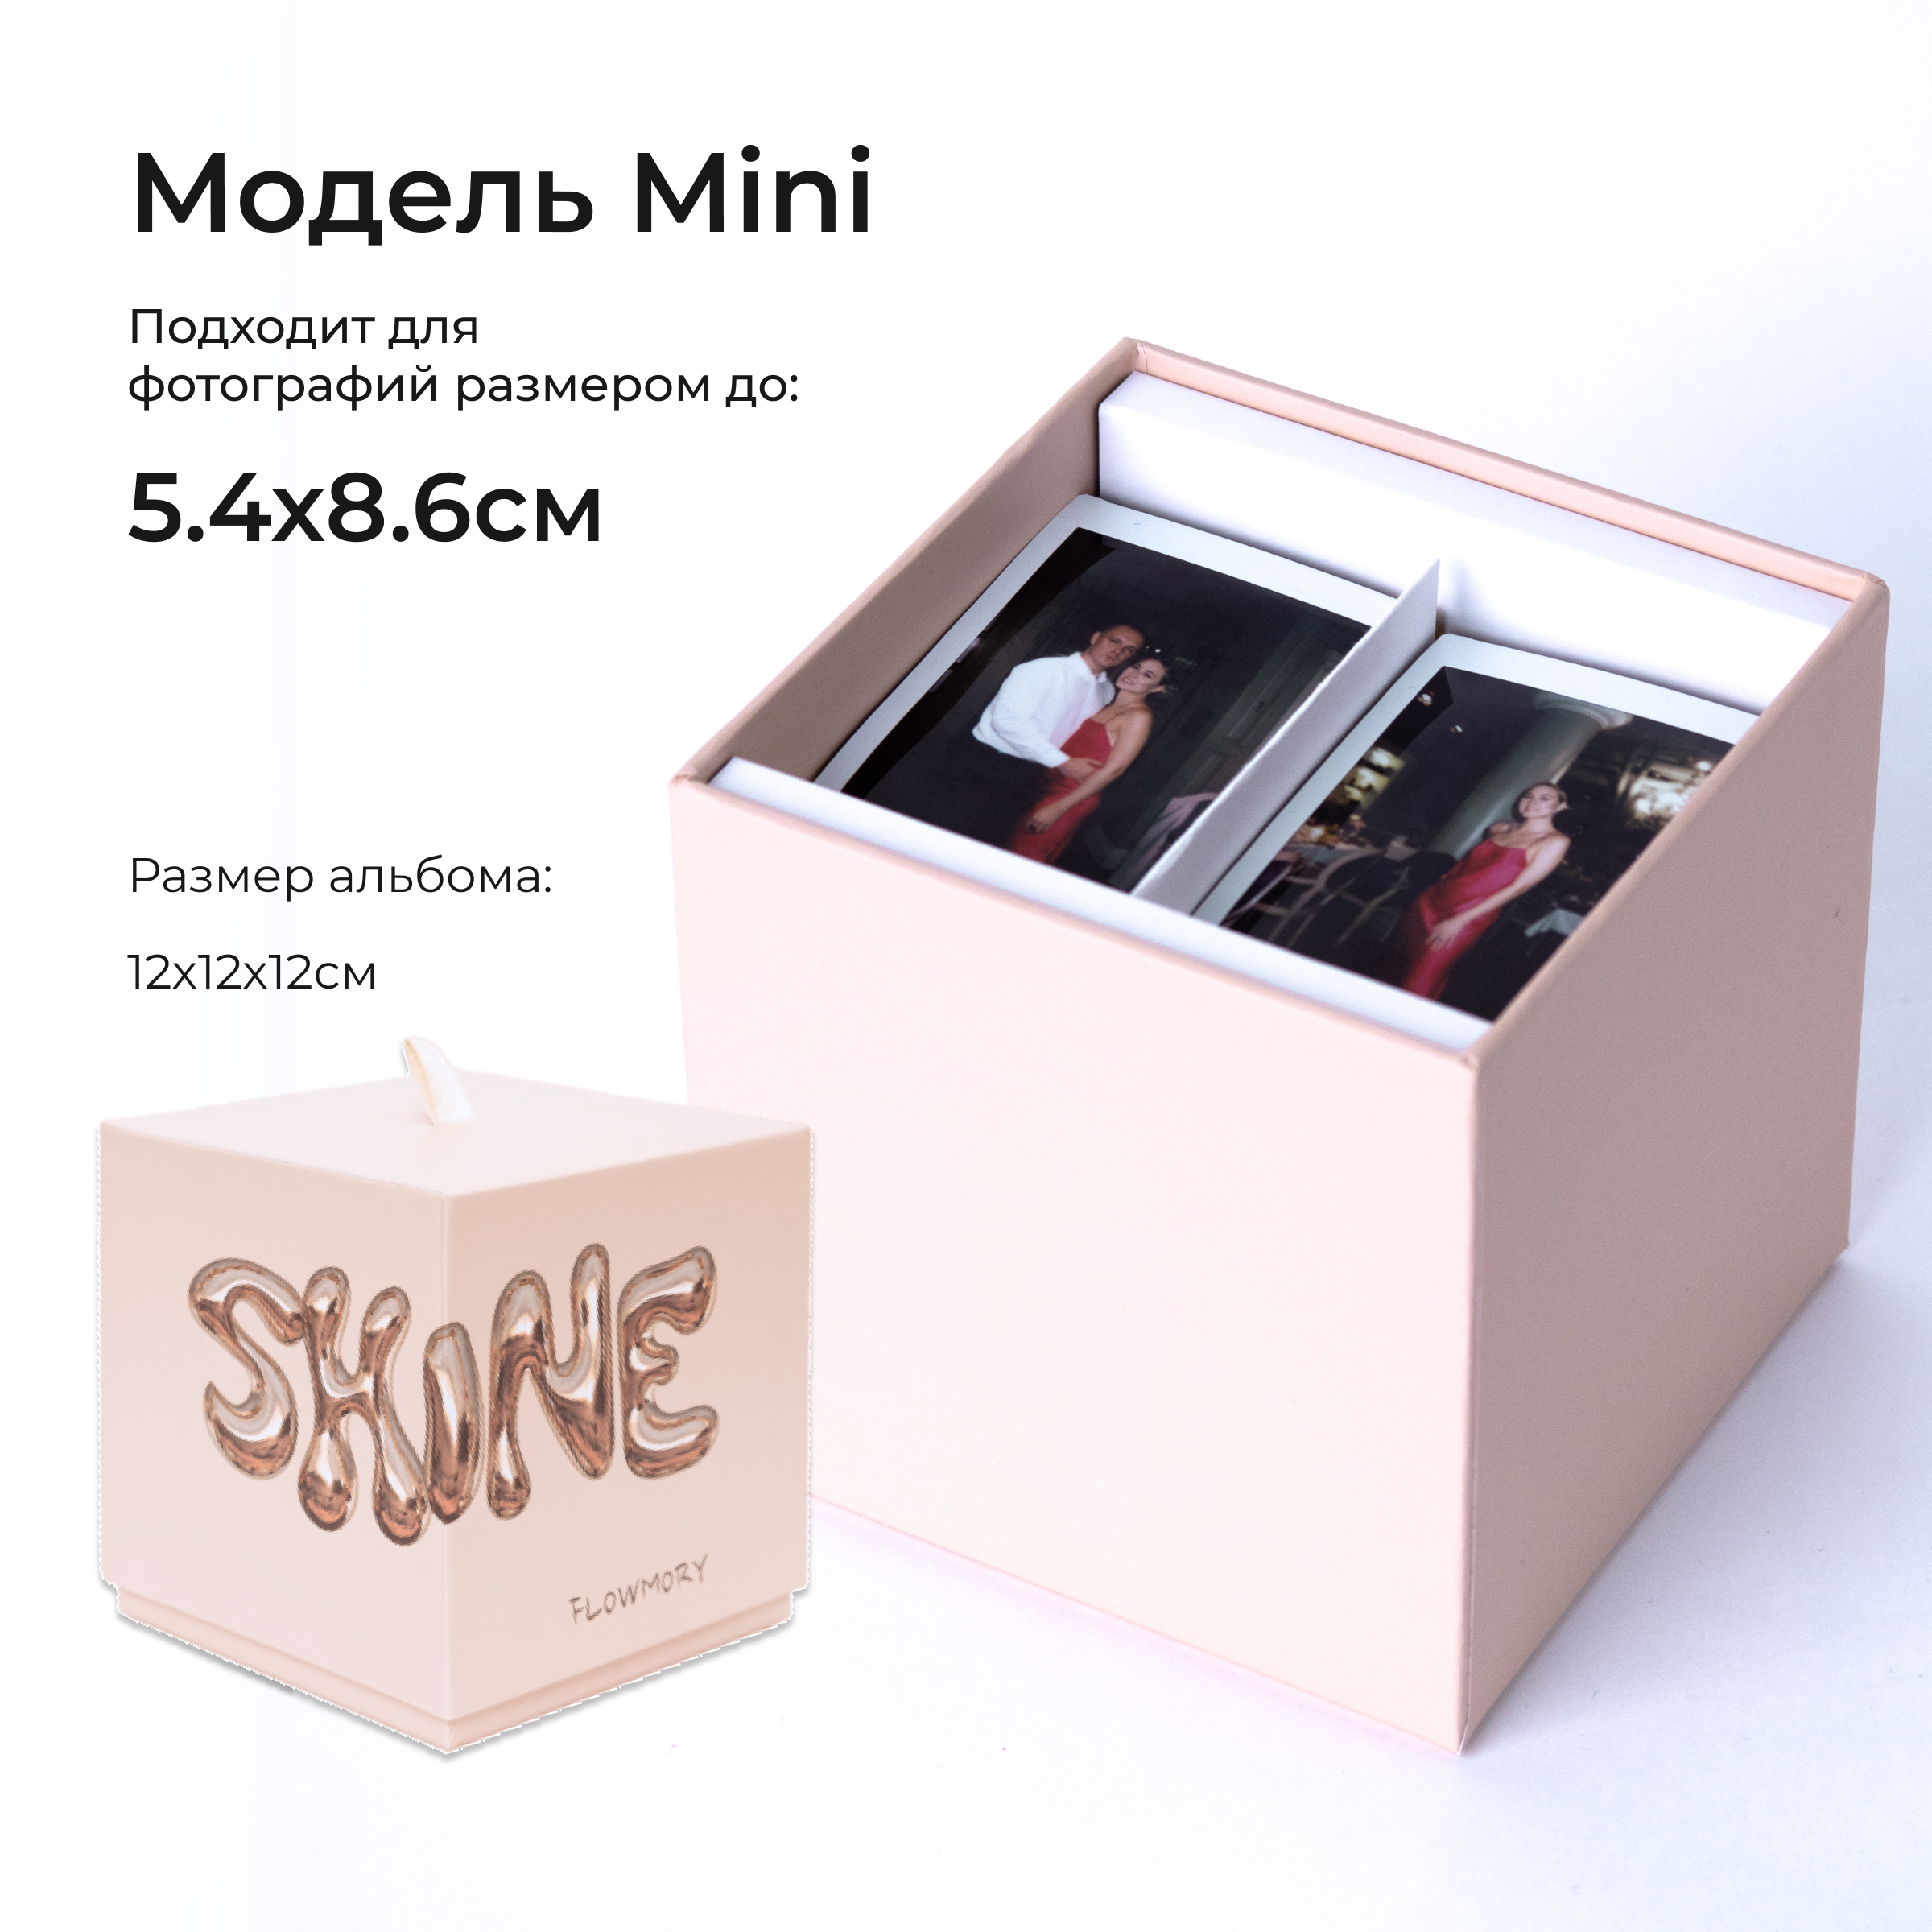 Фотоальбом FLOWMORY mini SHINE коробочка для instax и polaroid фотографий